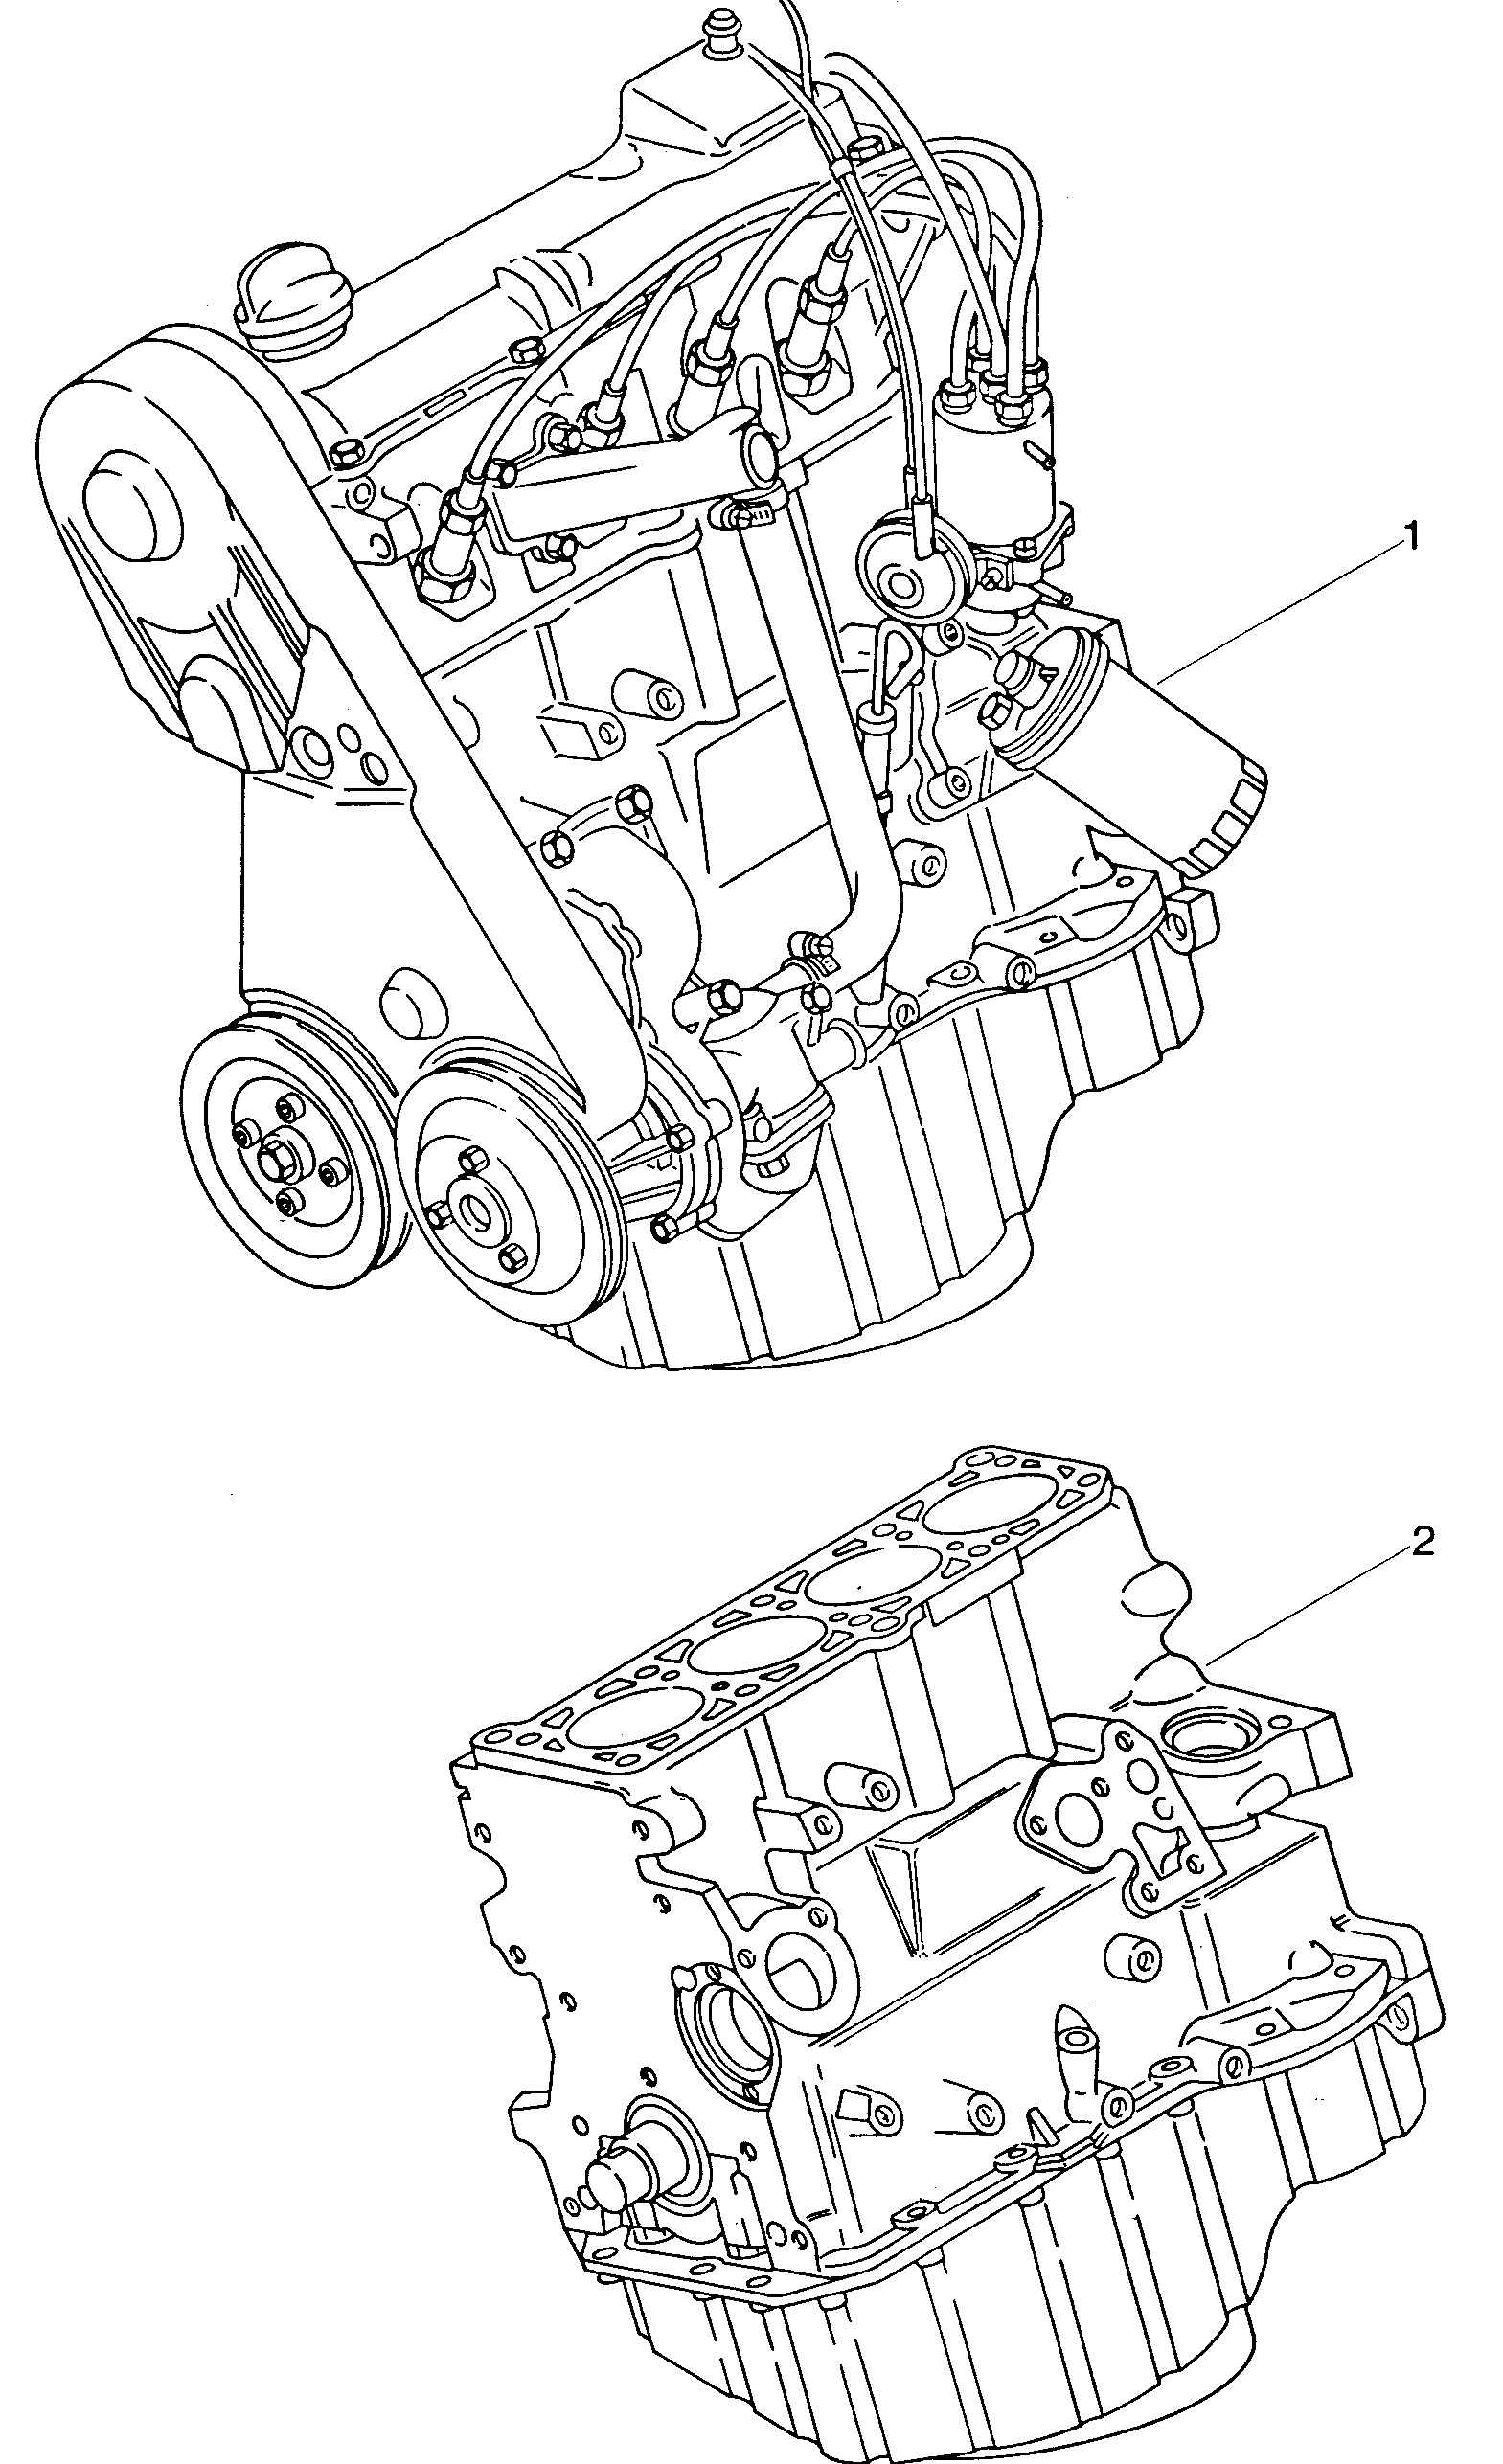 Teilmotor mit Kurbelwelle,<br>Kolben, Ölpumpe und Ölwanne  - Mod.181 / Iltis - ilt